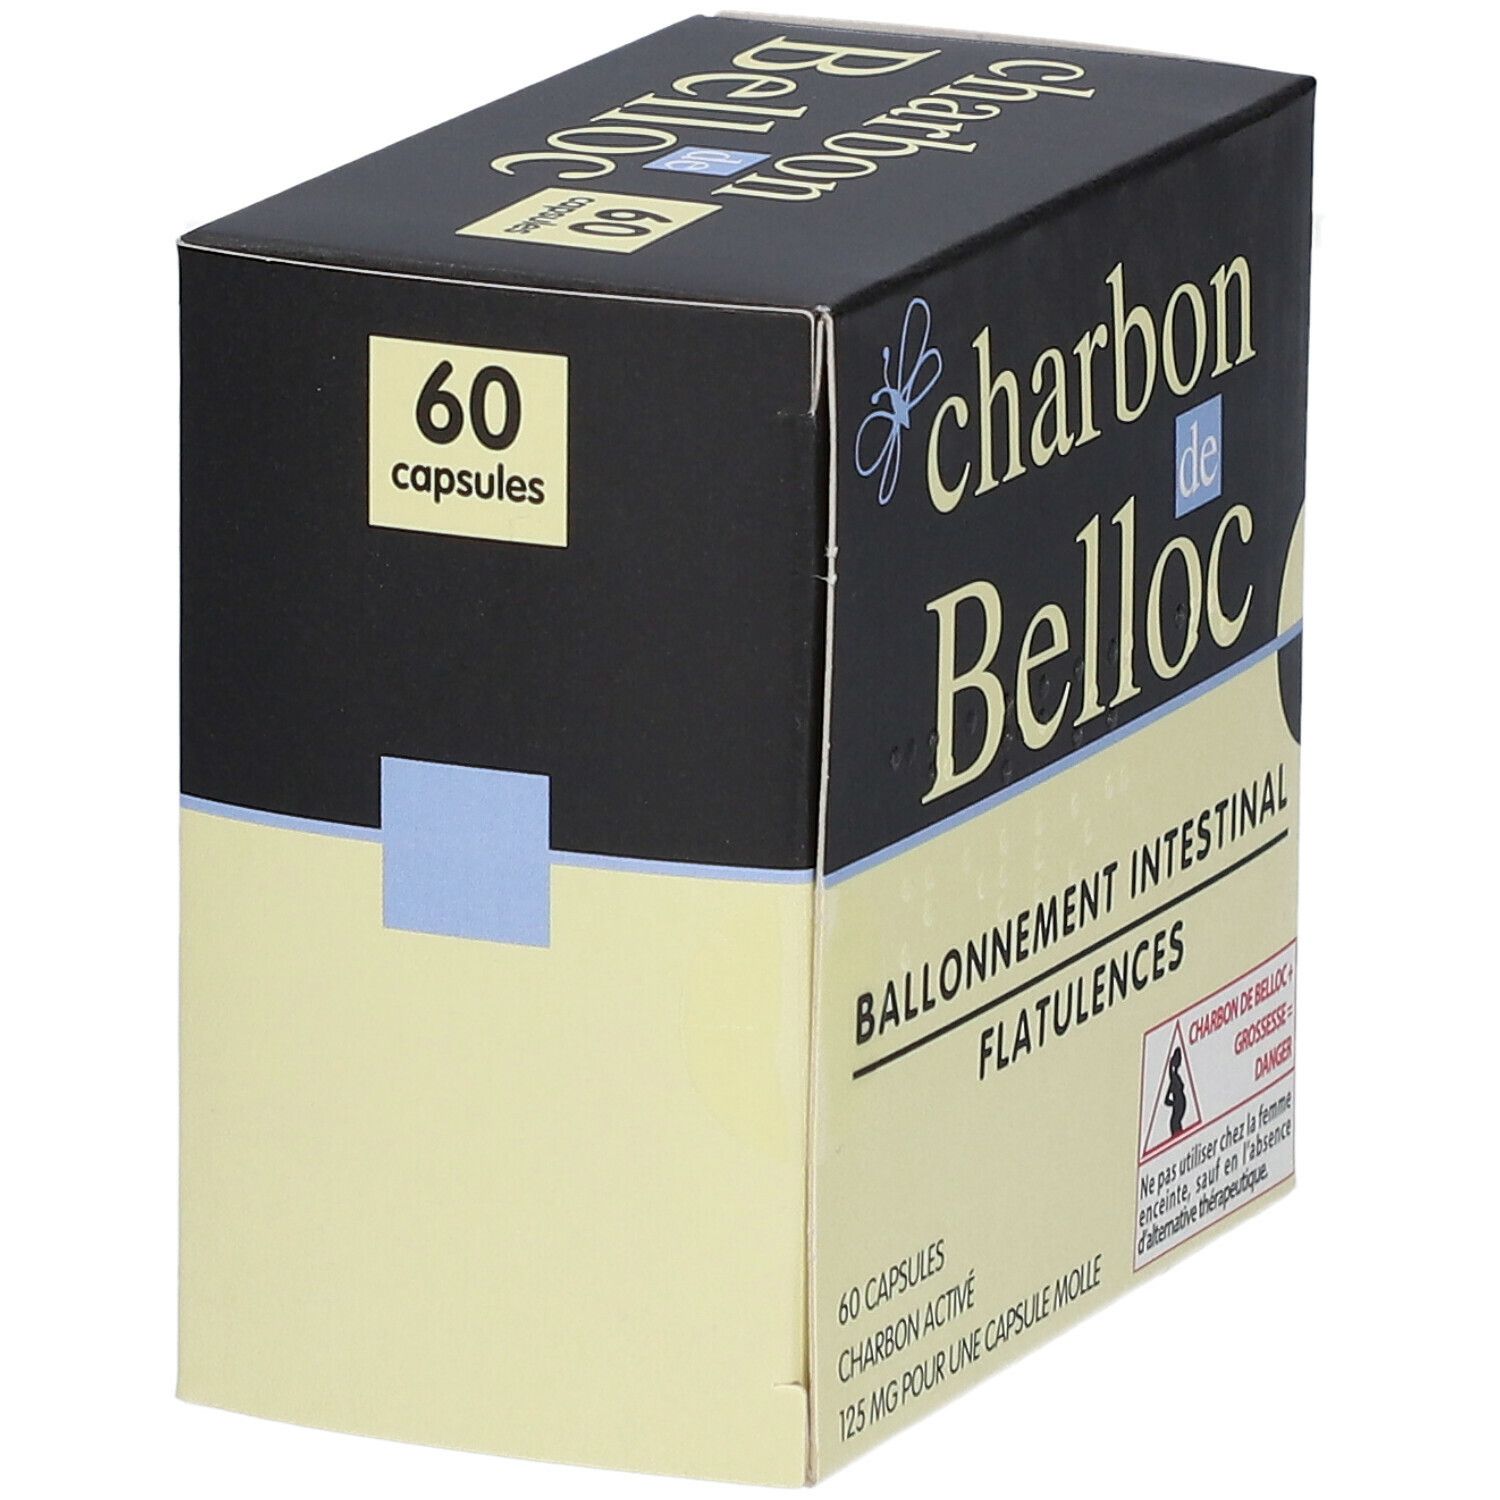 Charbon de belloc